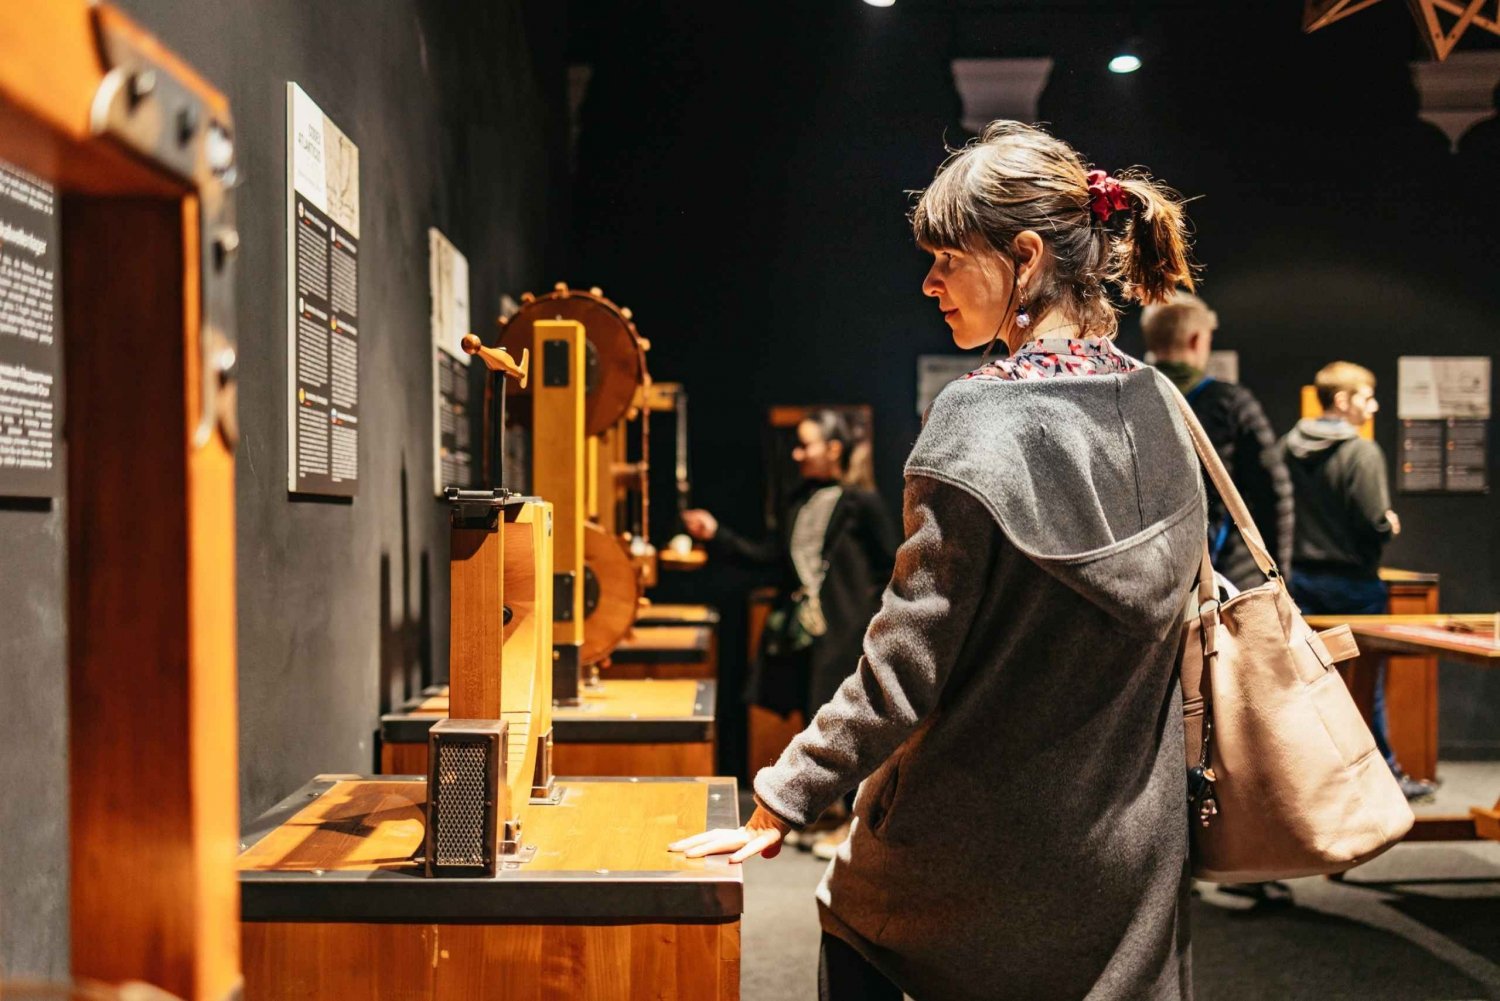 Florencja: Bilet wstępu do Interaktywnego Muzeum Leonarda